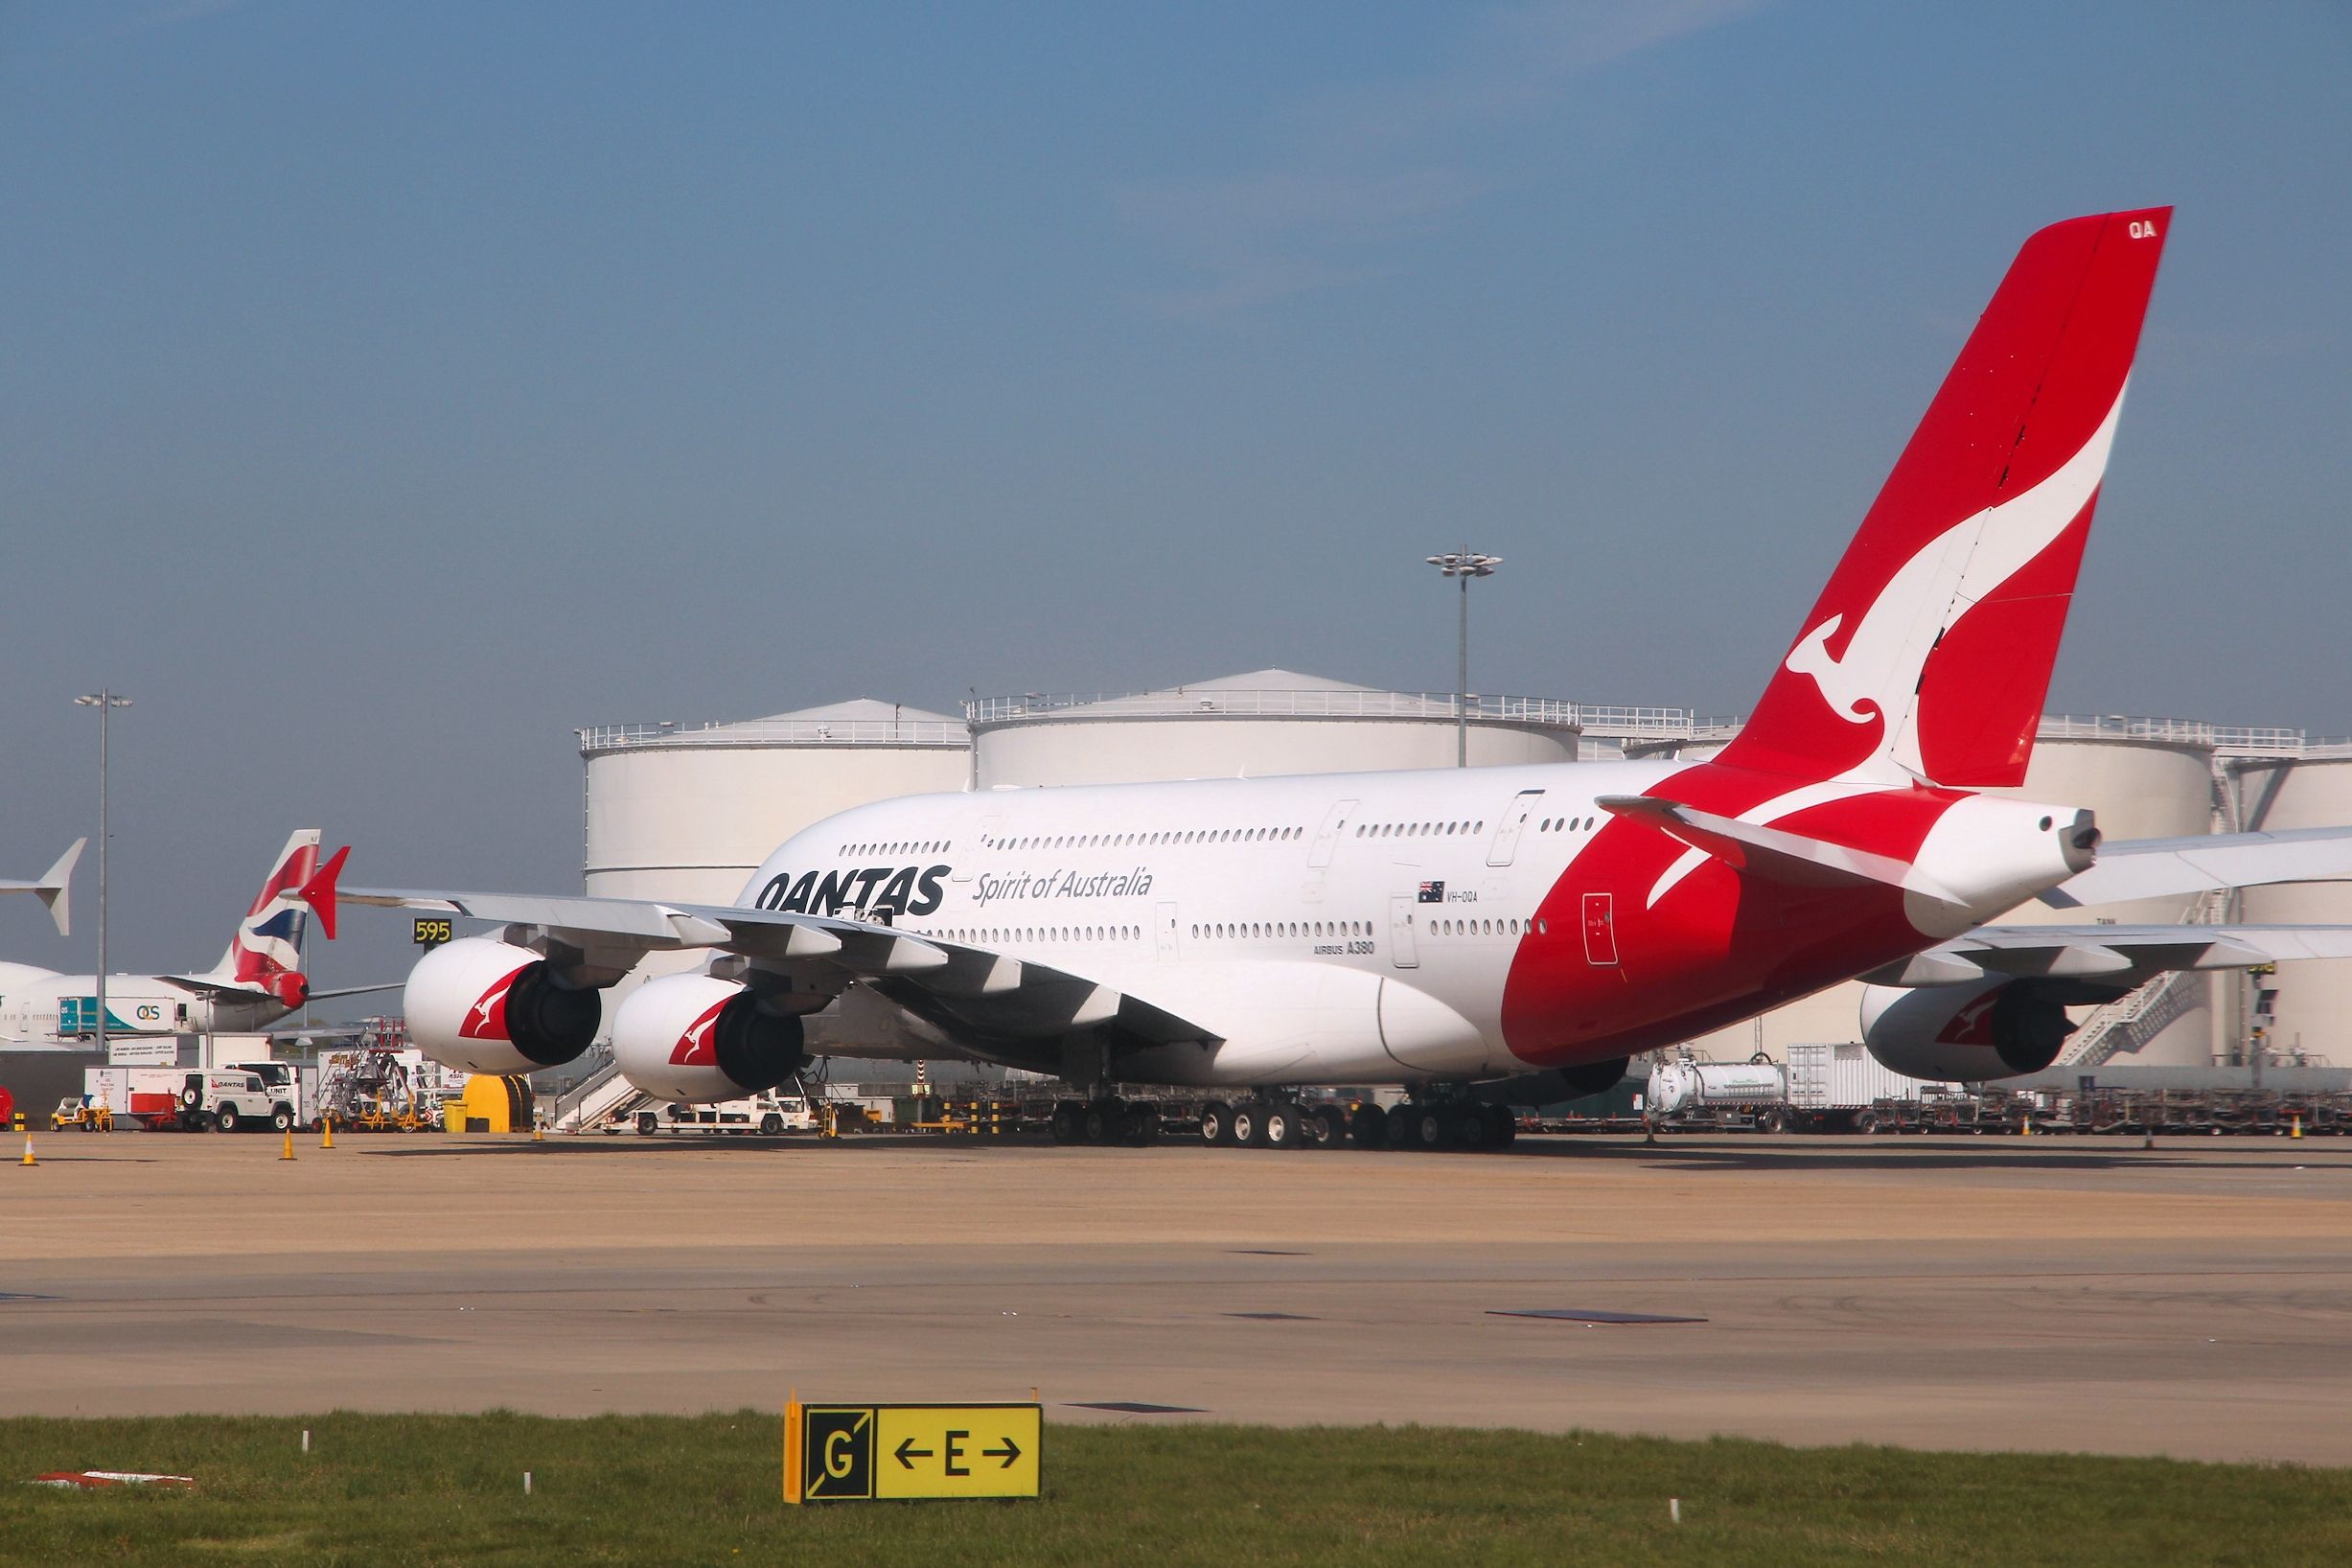 A Qantas Airbus A380 in Heathrow